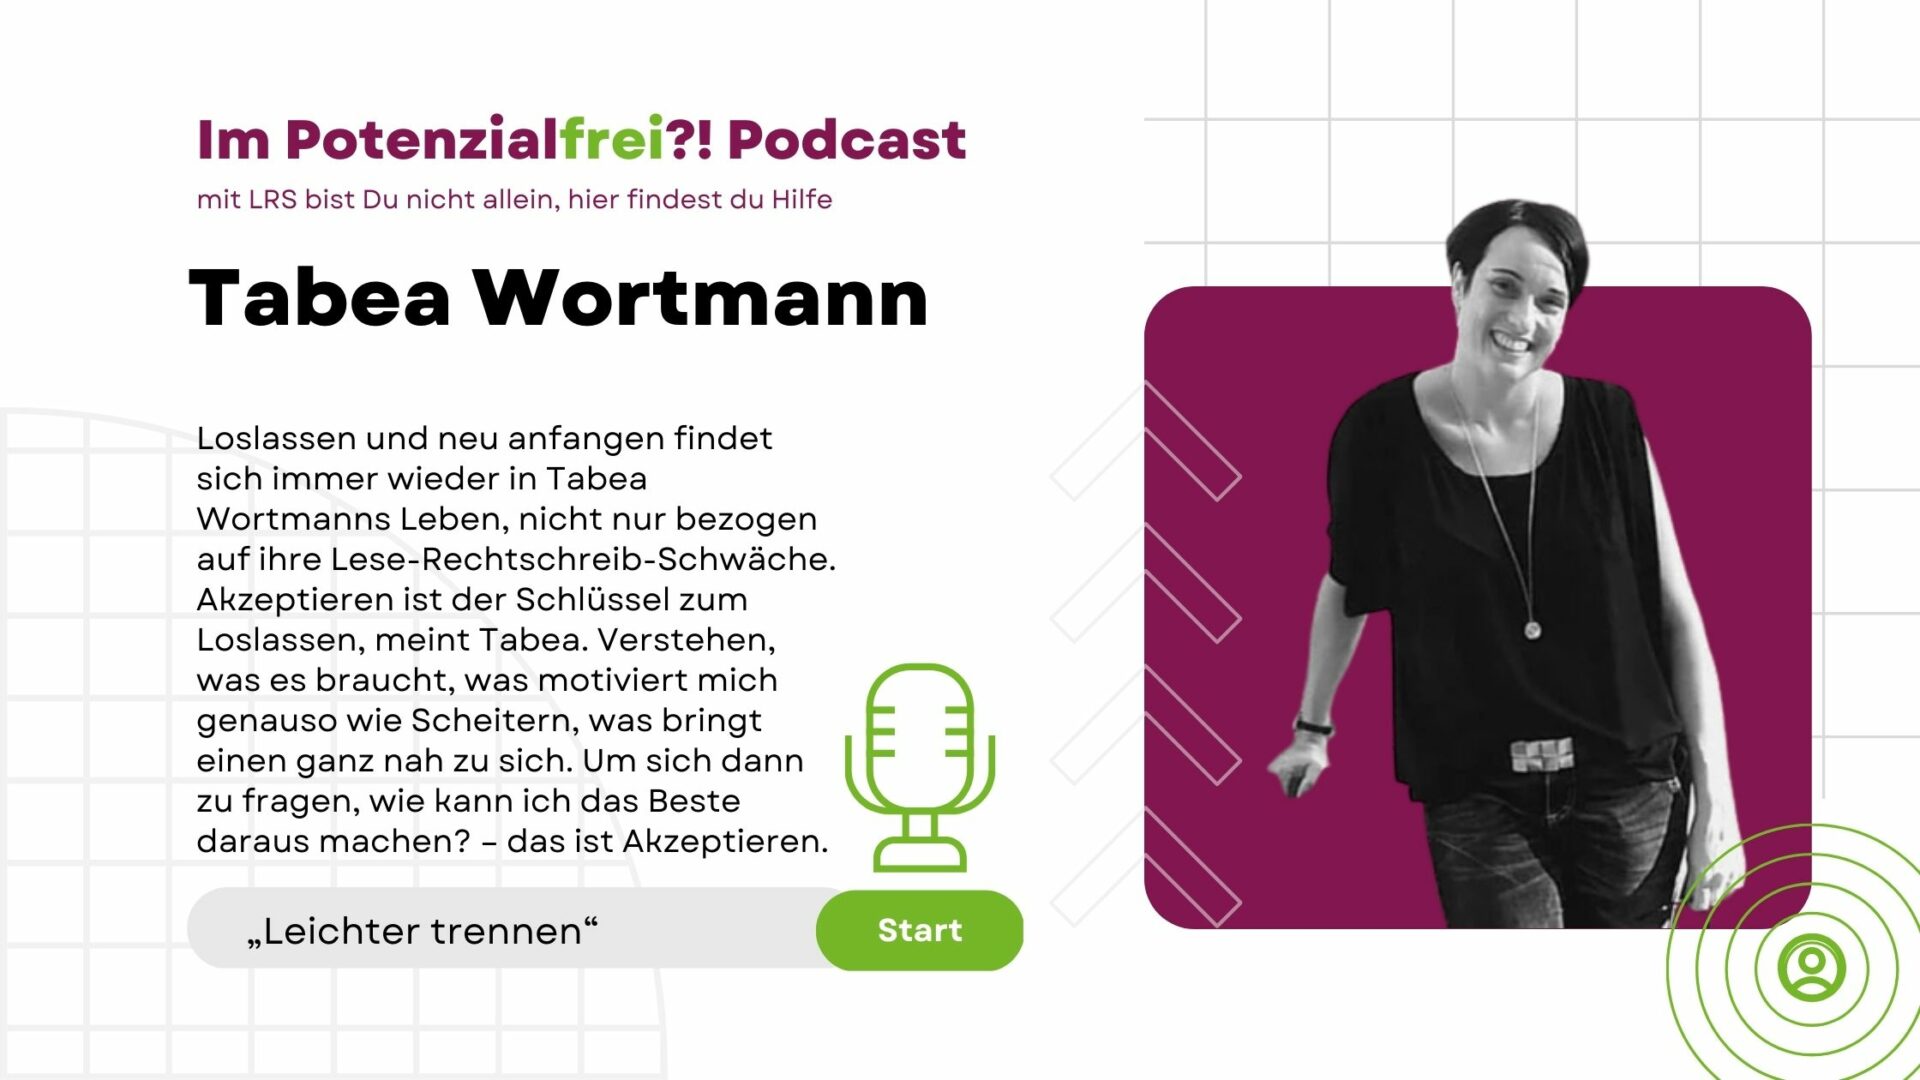 Tabea Wortmann von „Leichter trennen“ im Potenzialfrei! Podcast